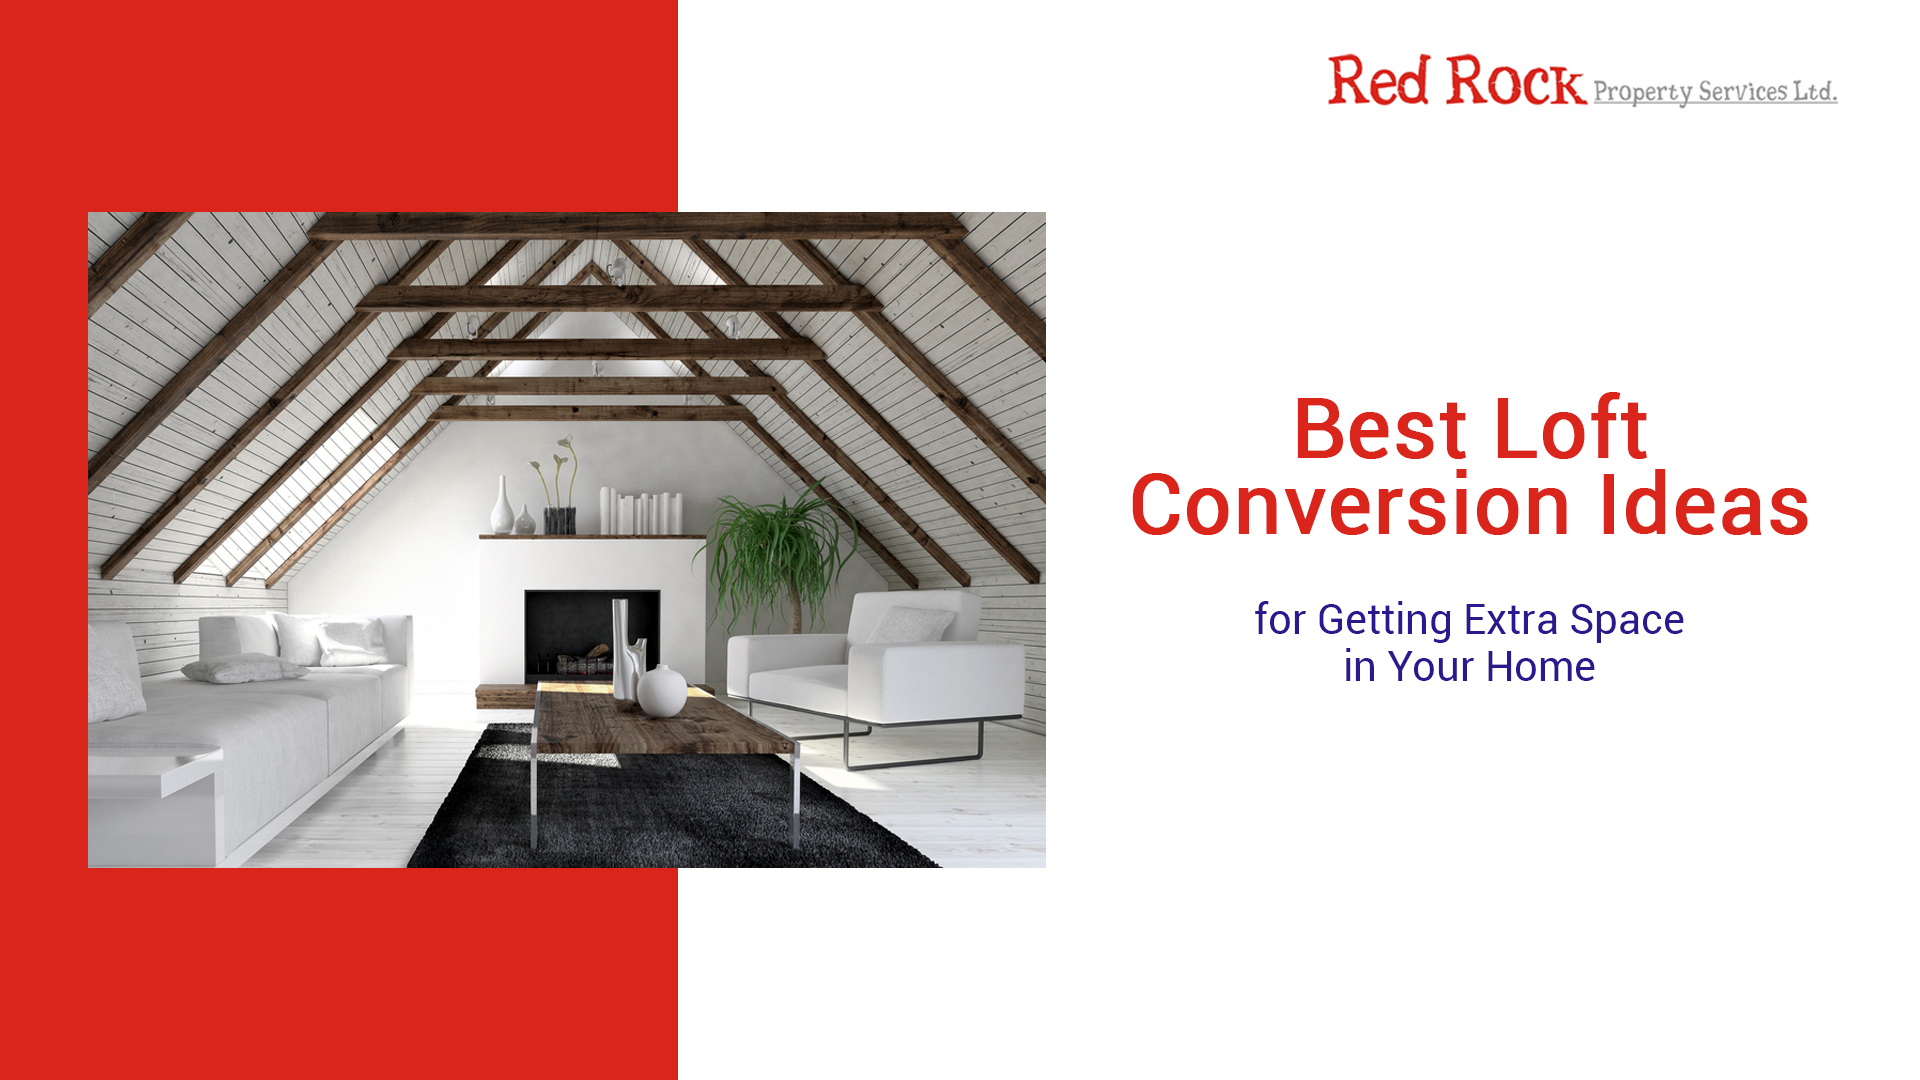 Best Loft Conversion Ideas